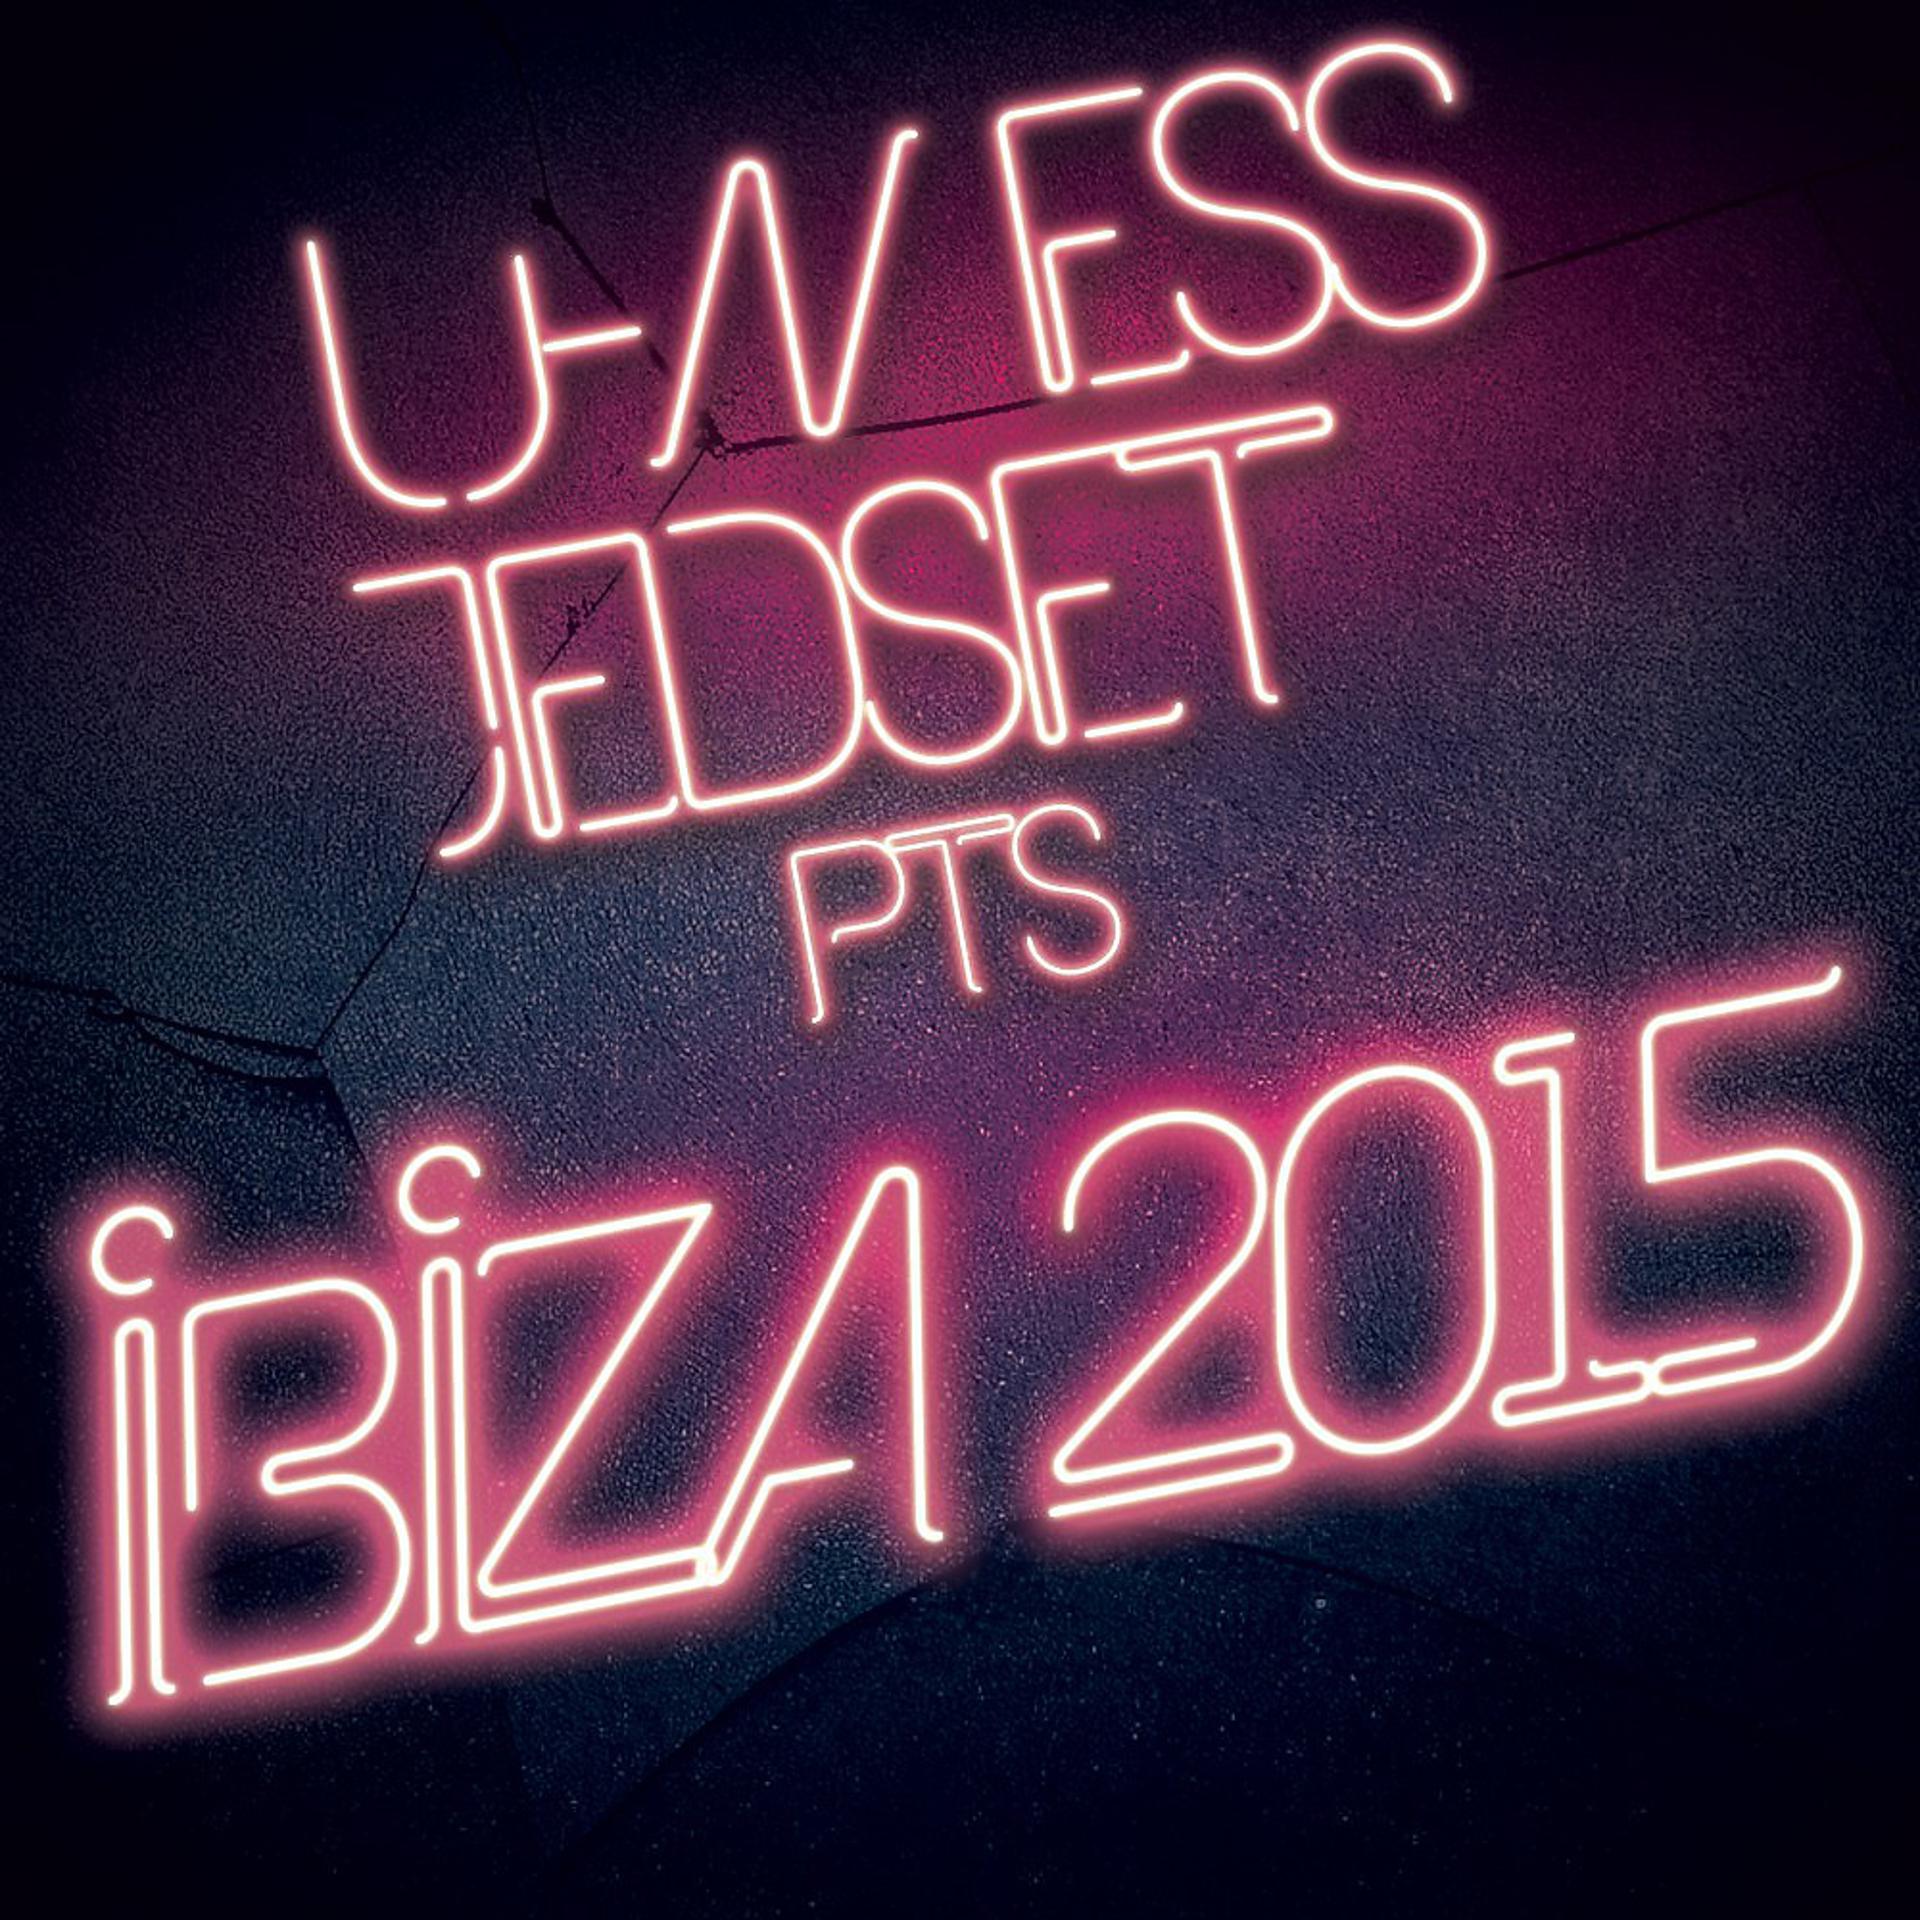 Постер альбома U-Ness & Jedset Pts Ibiza 2015